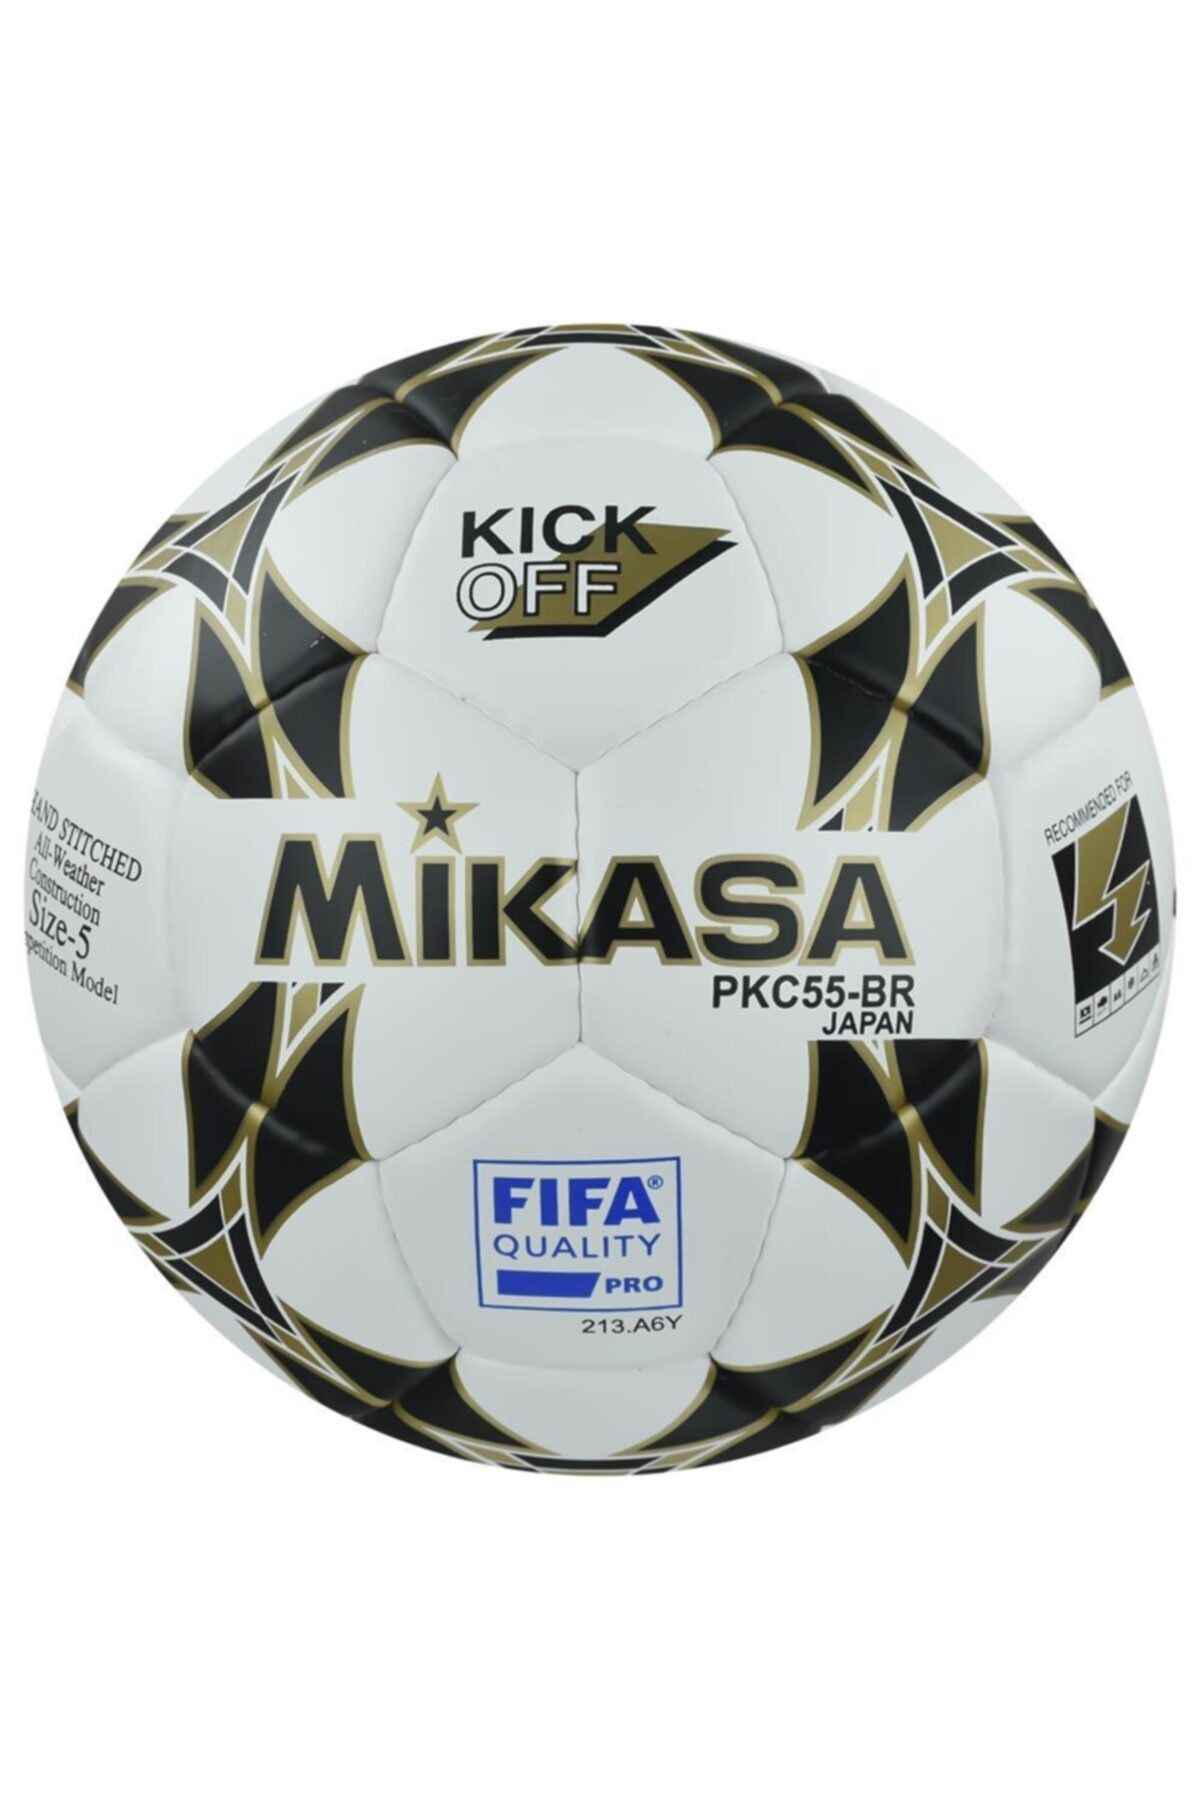 MIKASA Pkc55br1 El Dikişli Futbol Topu Maç Topu